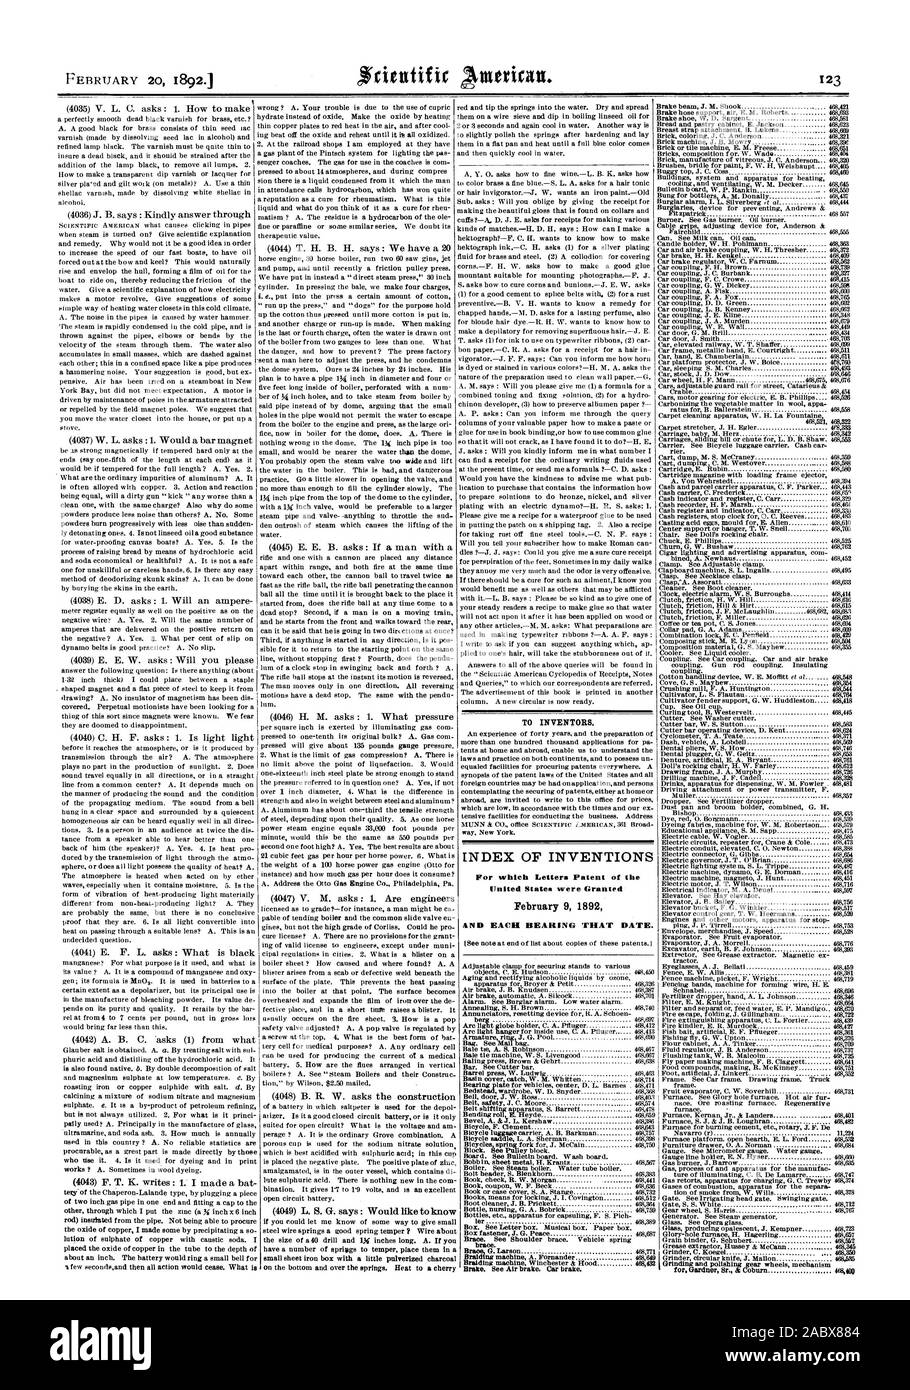 Pour les inventeurs. INDEX DES INVENTIONS pour lesquelles Lettres patentes de l'United States ont été octroyées le 9 février 1892 et chaque roulement CETTE DATE., Scientific American, 1892-02-20 Banque D'Images